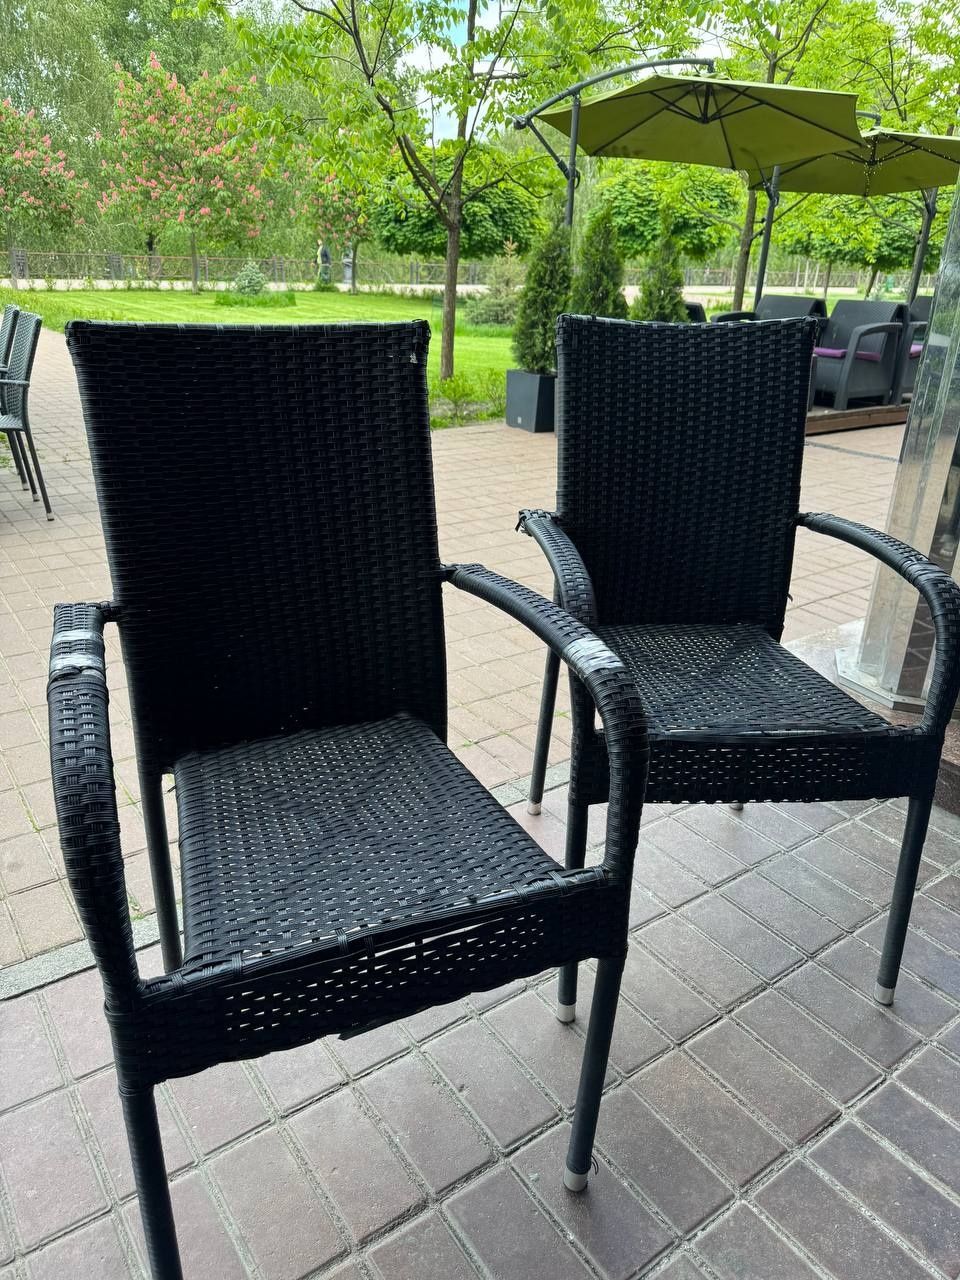 Плетені стільці(крісла) на терасу у садок